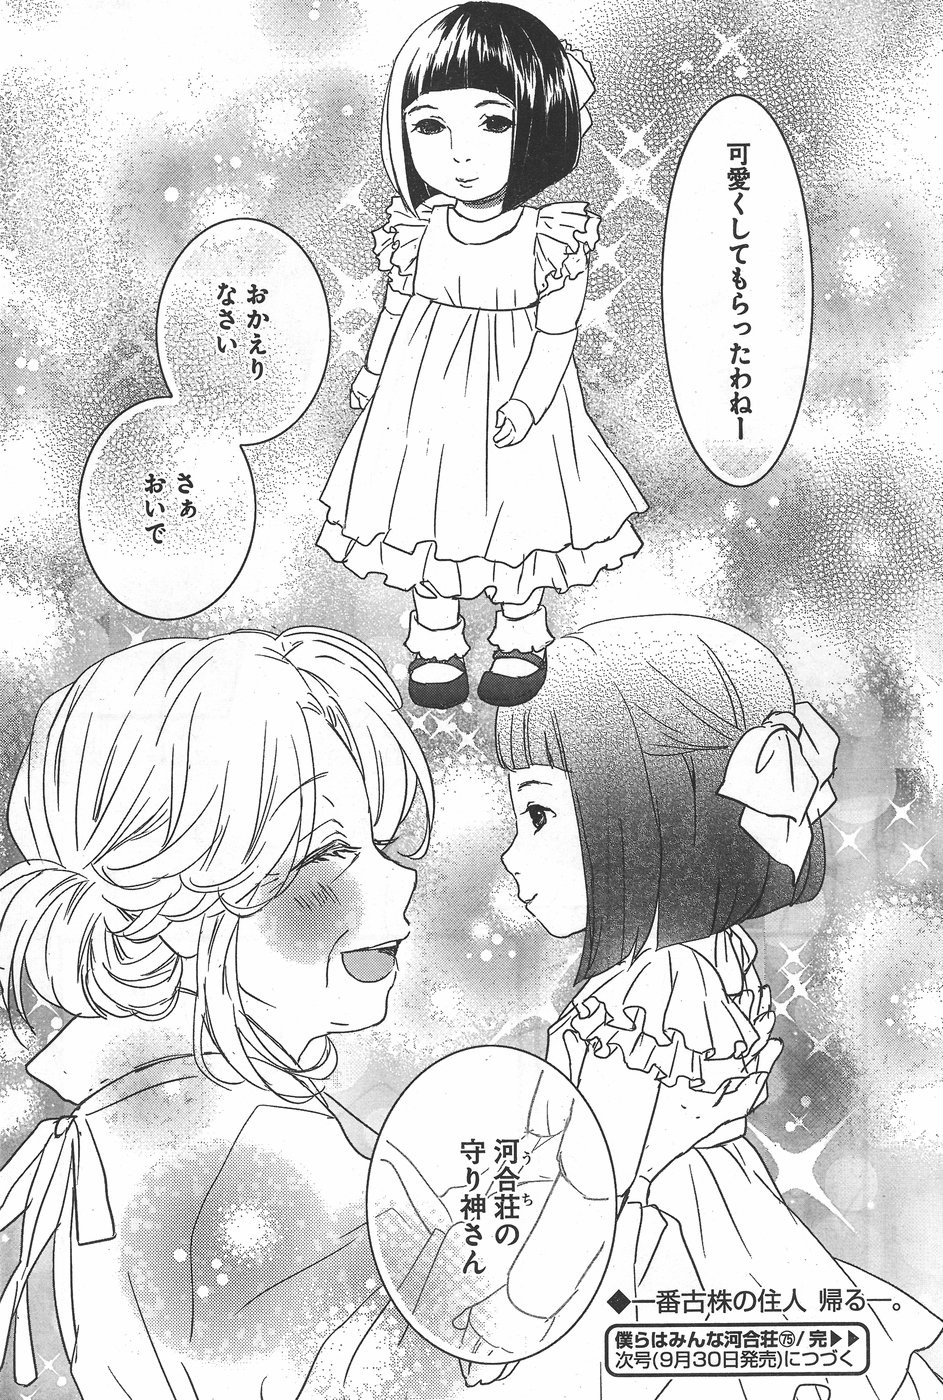 Bokura wa Minna Kawaisou - Chapter 75 - Page 23